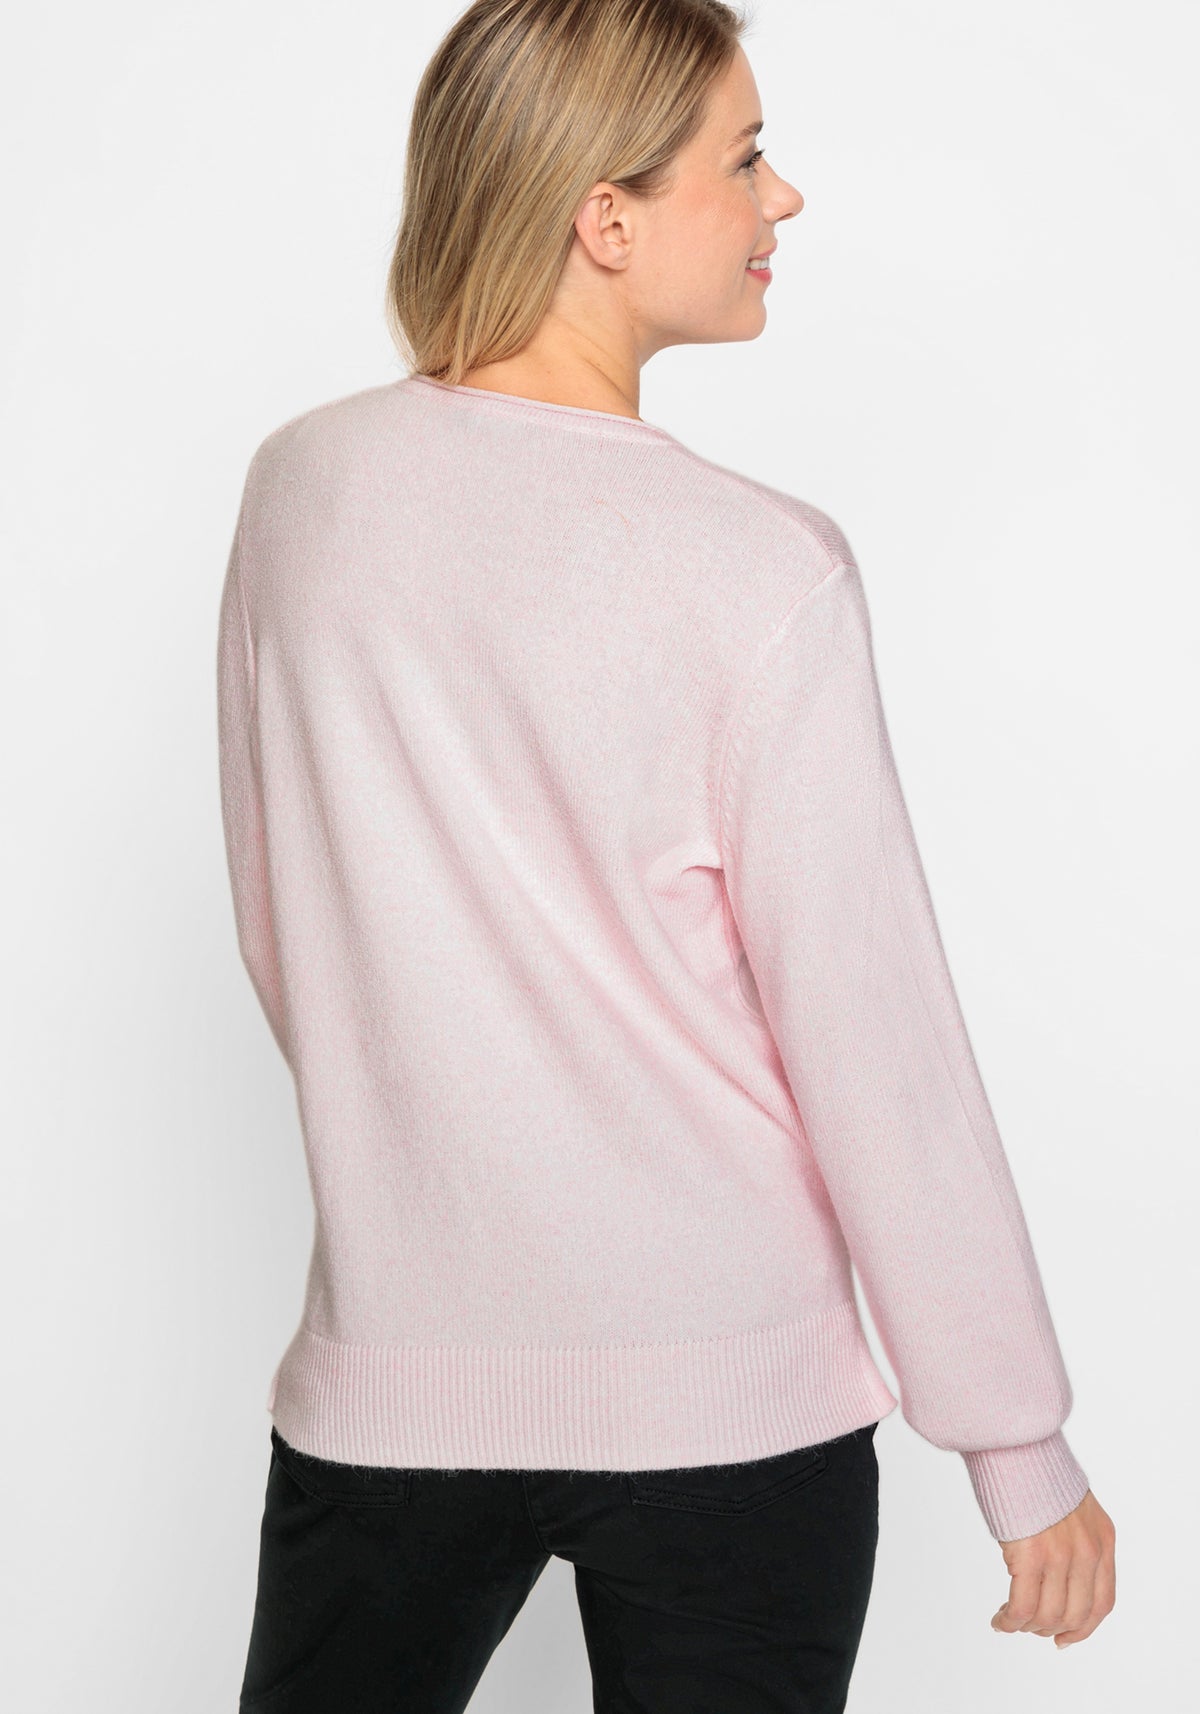 Long Sleeve Rhinestone Embellished Sweater